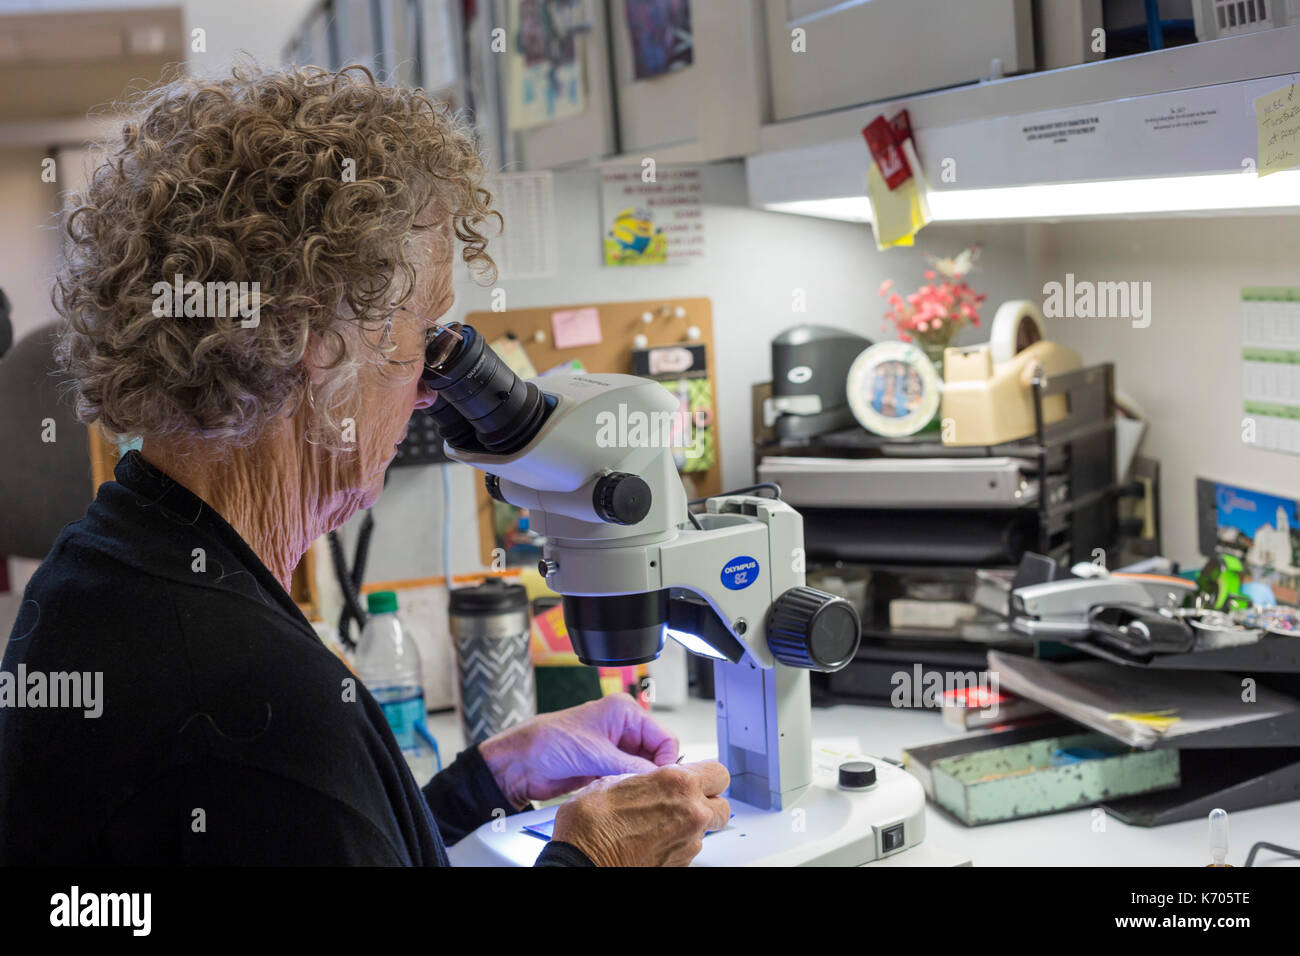 Fort Collins, Colorado - le laboratoire national pour la préservation des ressources génétiques, une unité du département de l'agriculture. sue Varela, un produit biologique Banque D'Images